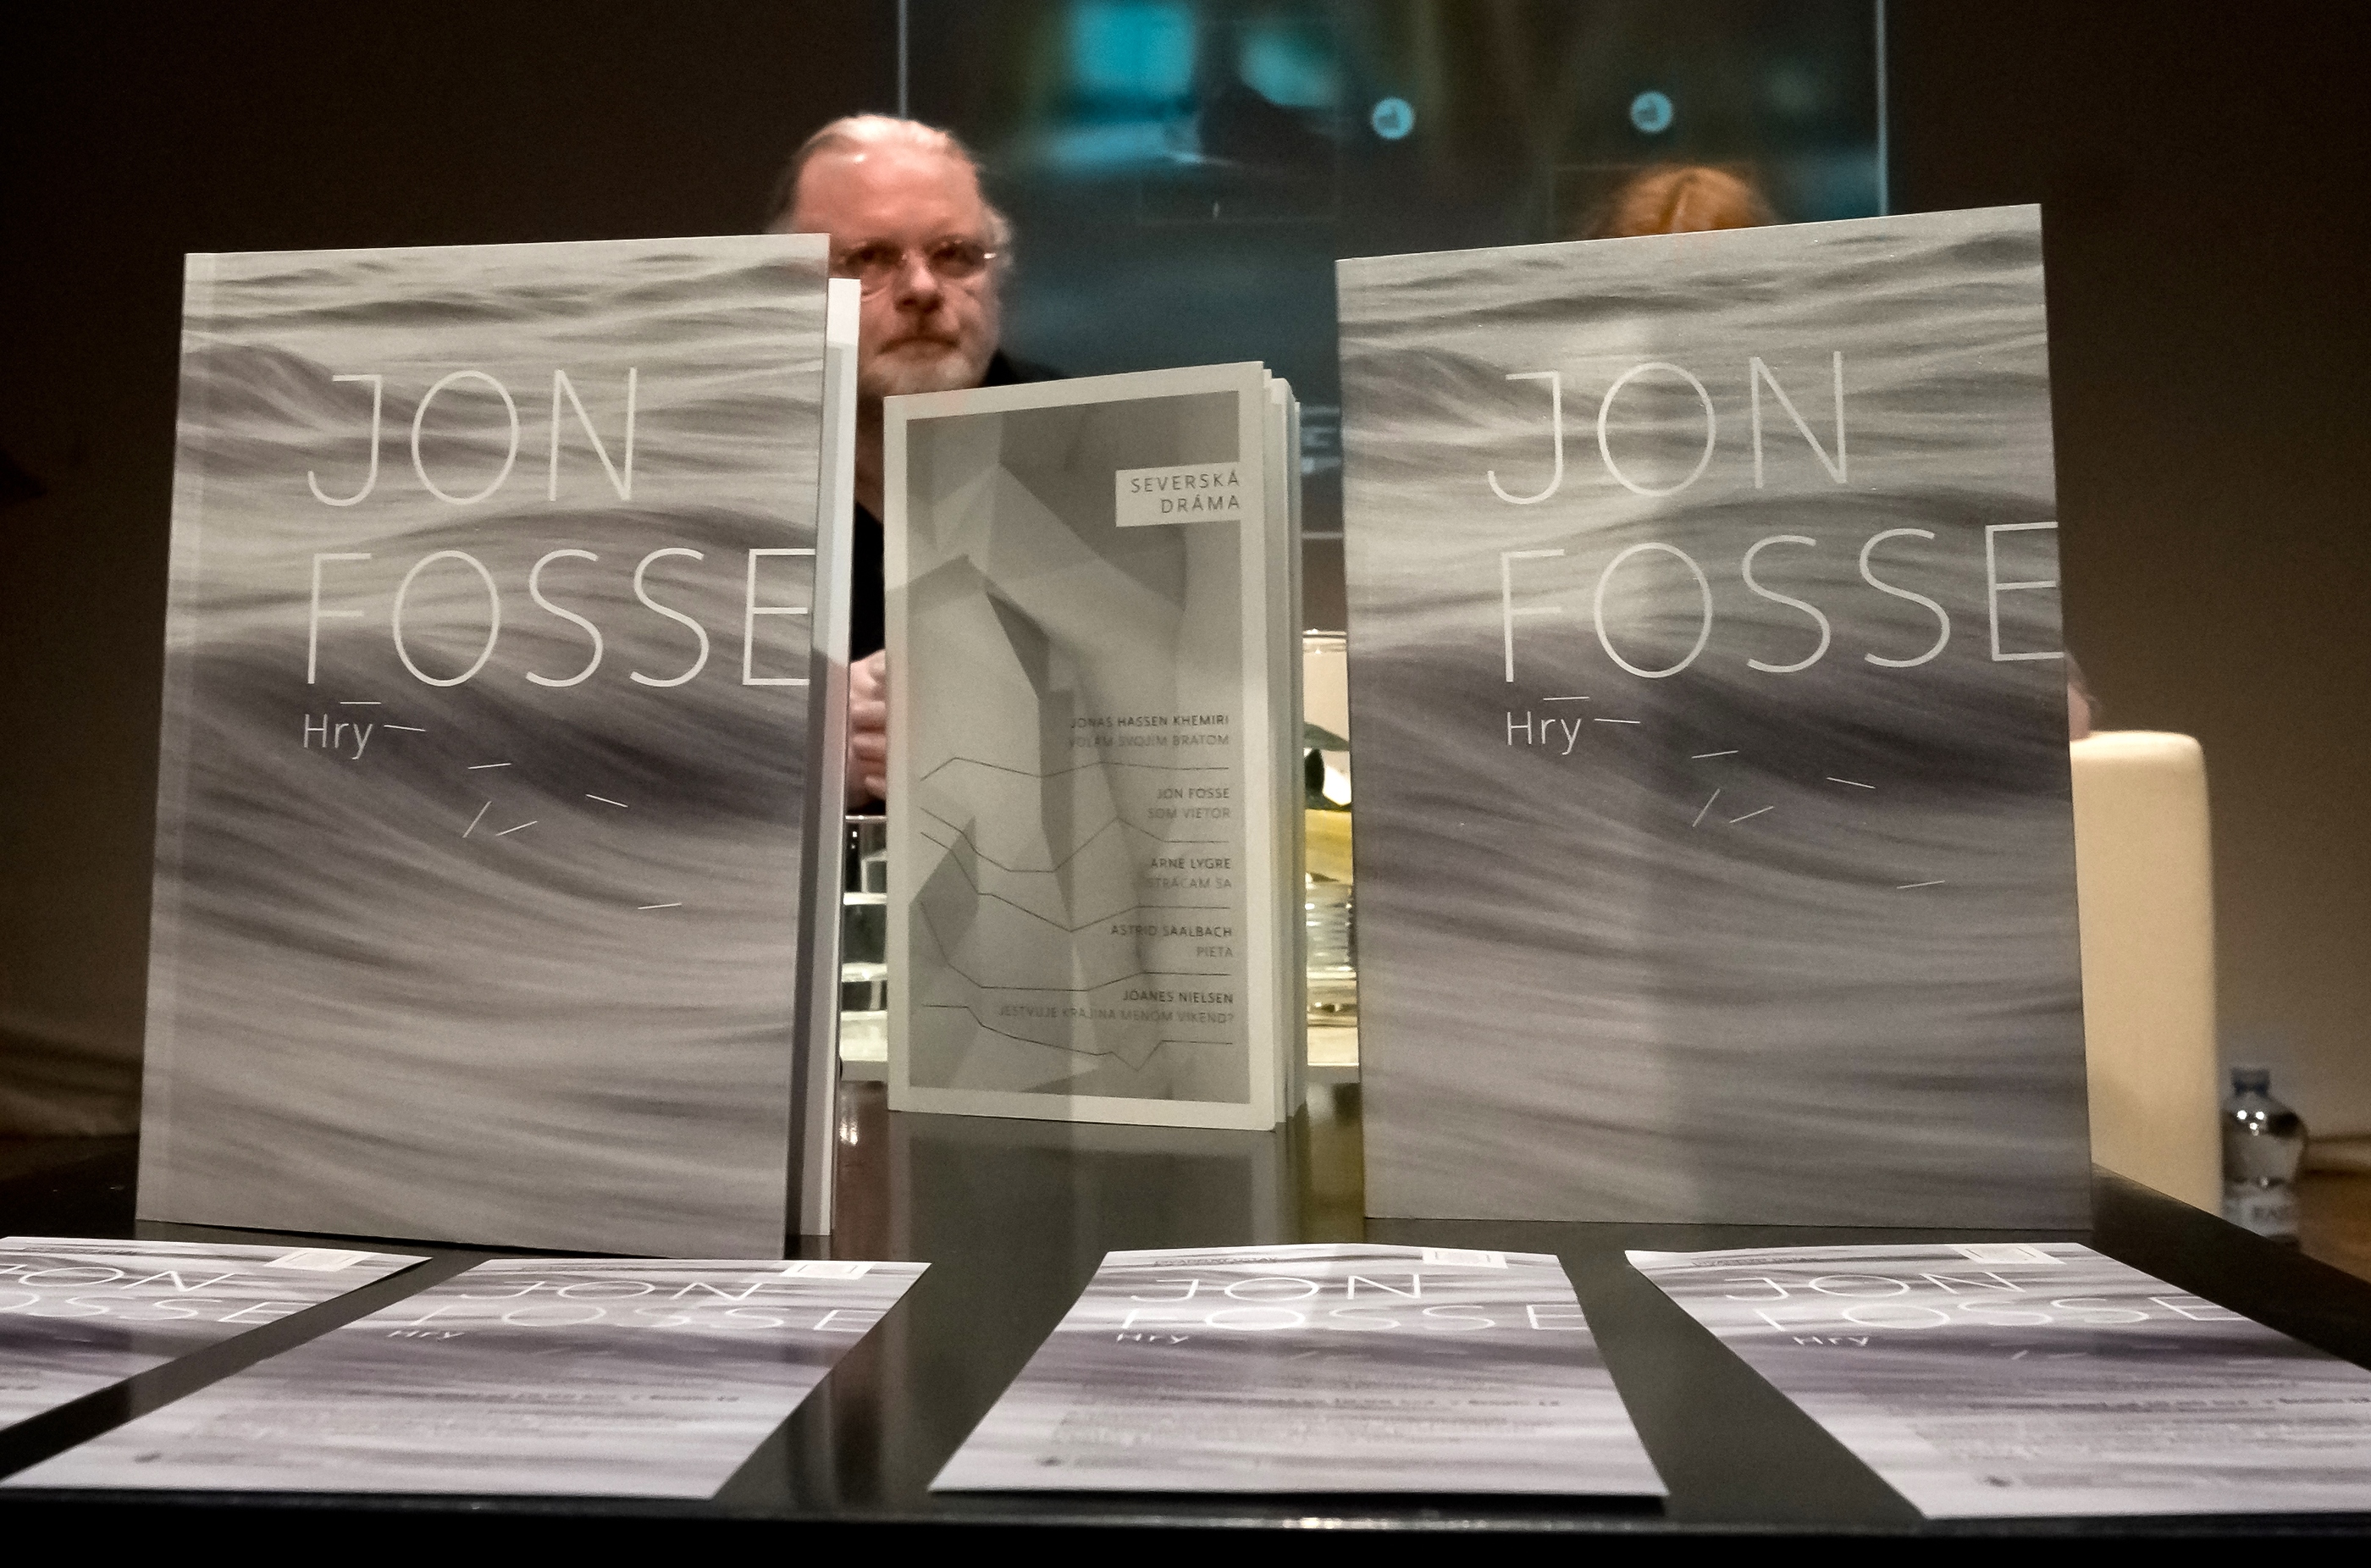 Jon Fosse  Hry, výber z autorovej dramatickej tvorby